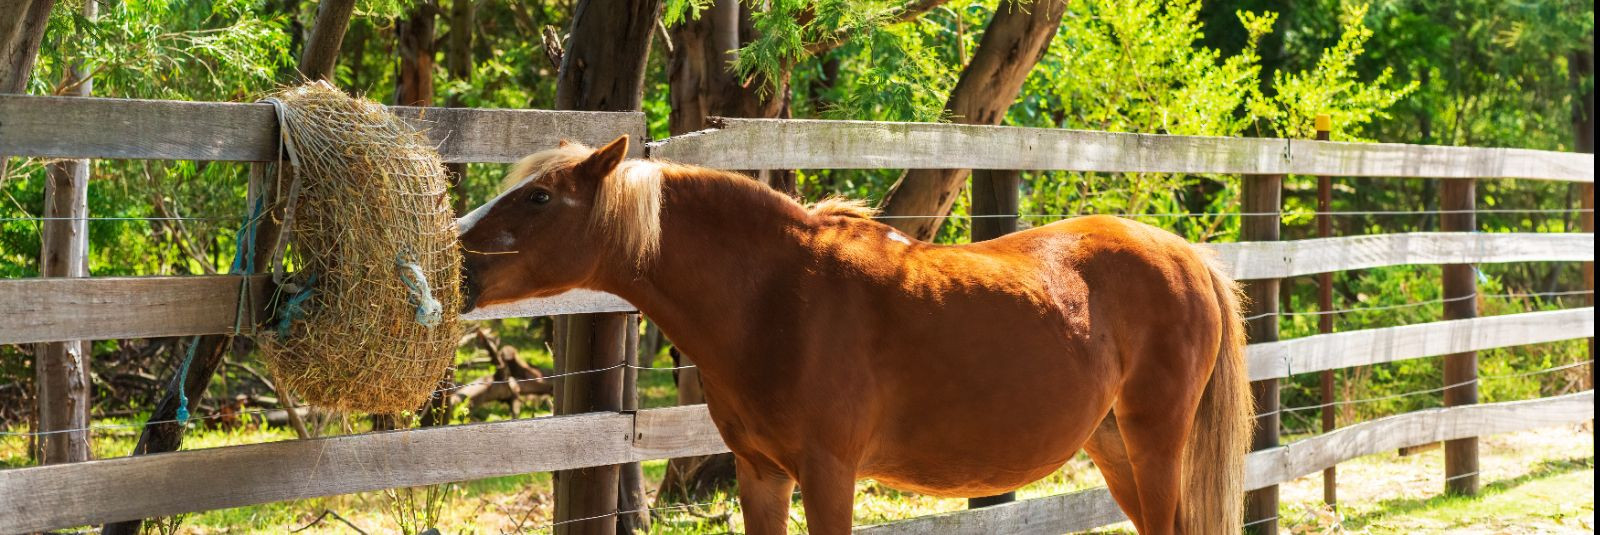 Hobuse tervis ja heaolu on igale hobuseomanikule äärmiselt olulised. Selleks, et hobune oleks terve, energiline ja jõuline, on oluline tagada talle õige toitumi